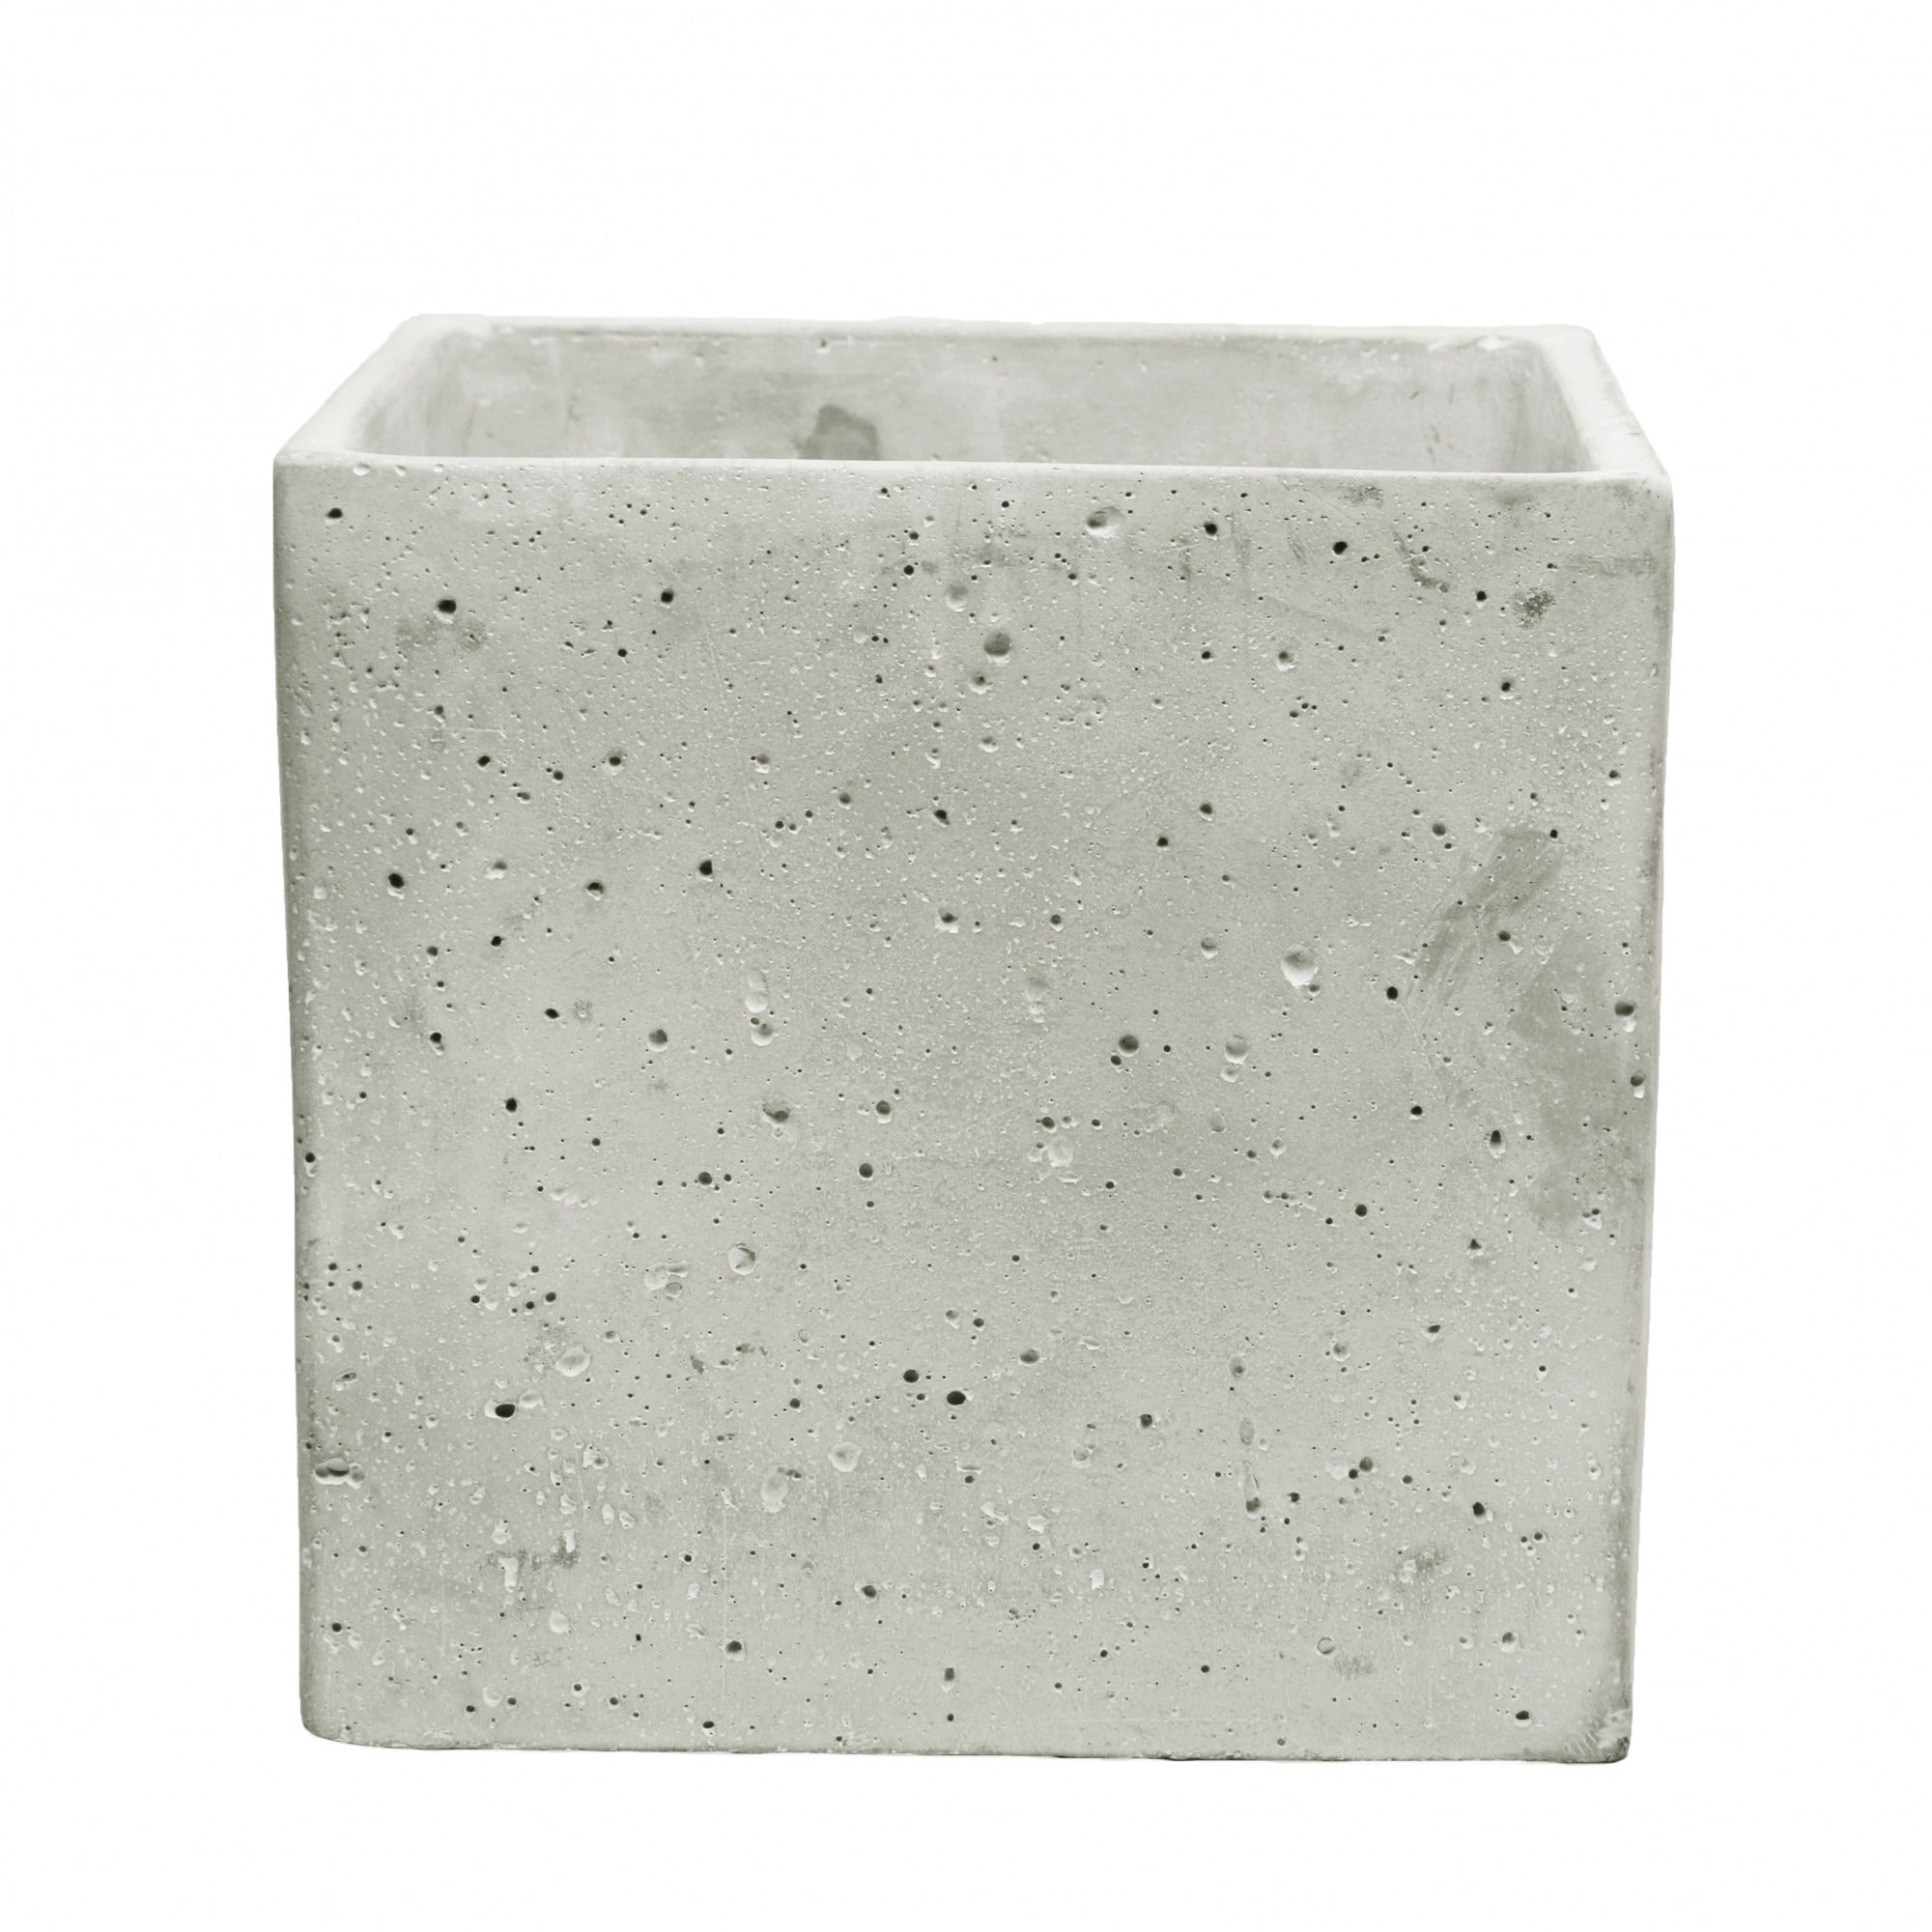 View Square Cement Flower Pot 18cm information